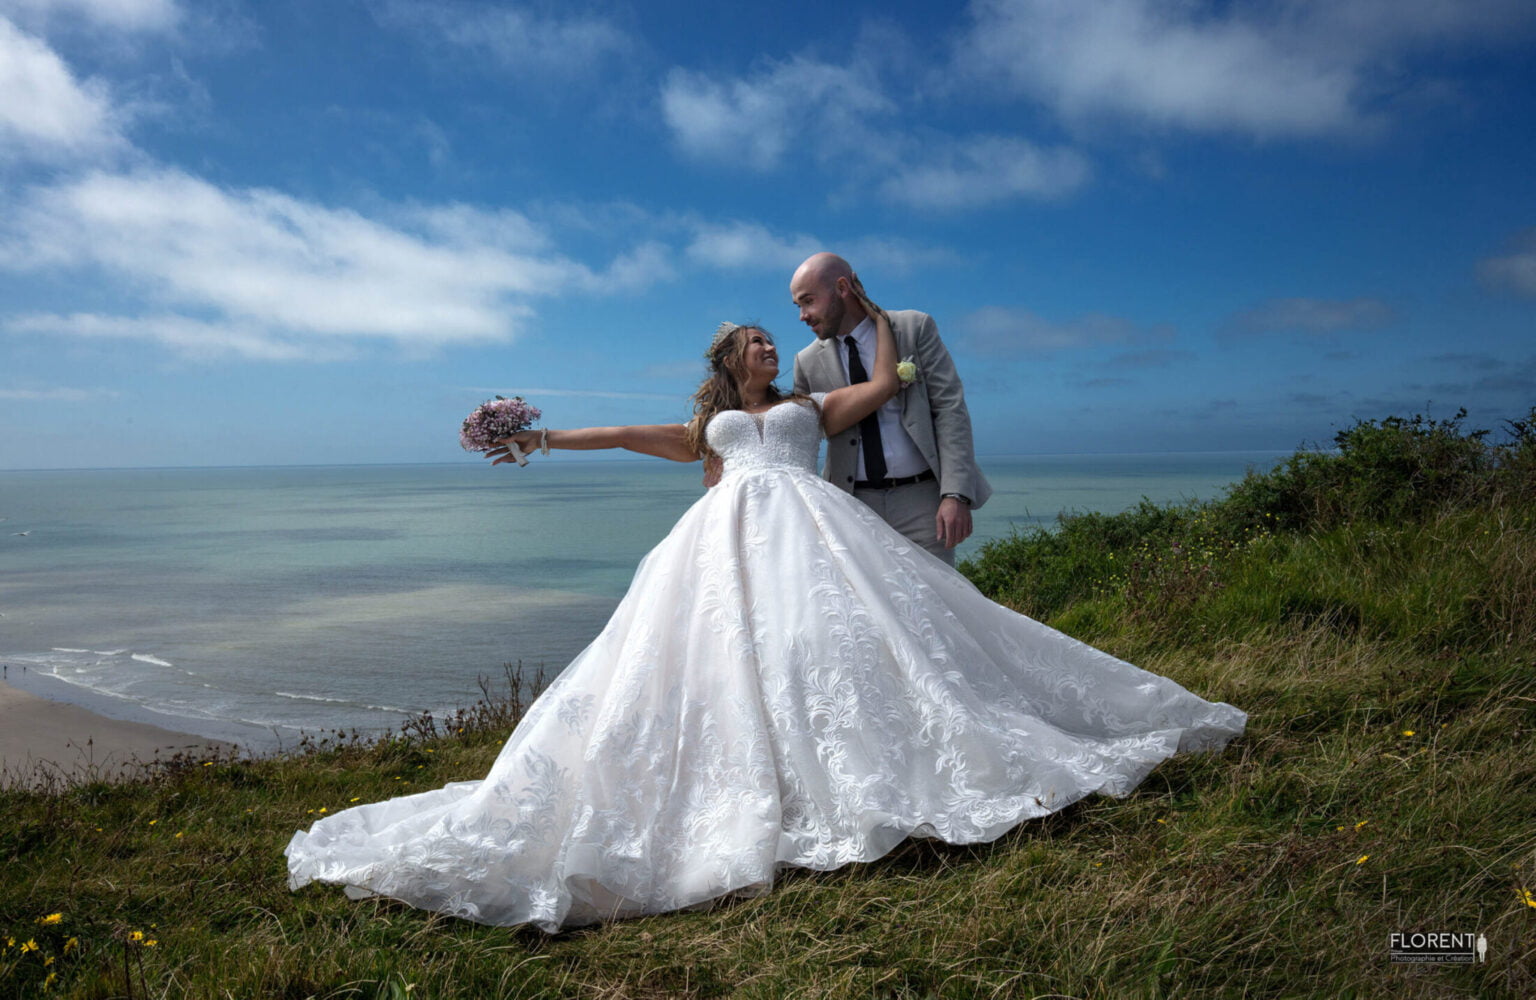 séance photo mariage romantique en bord de mer jeune couple souriant sur falaise boulogne sur mer lille le touquet paris amiens calais florent photographe